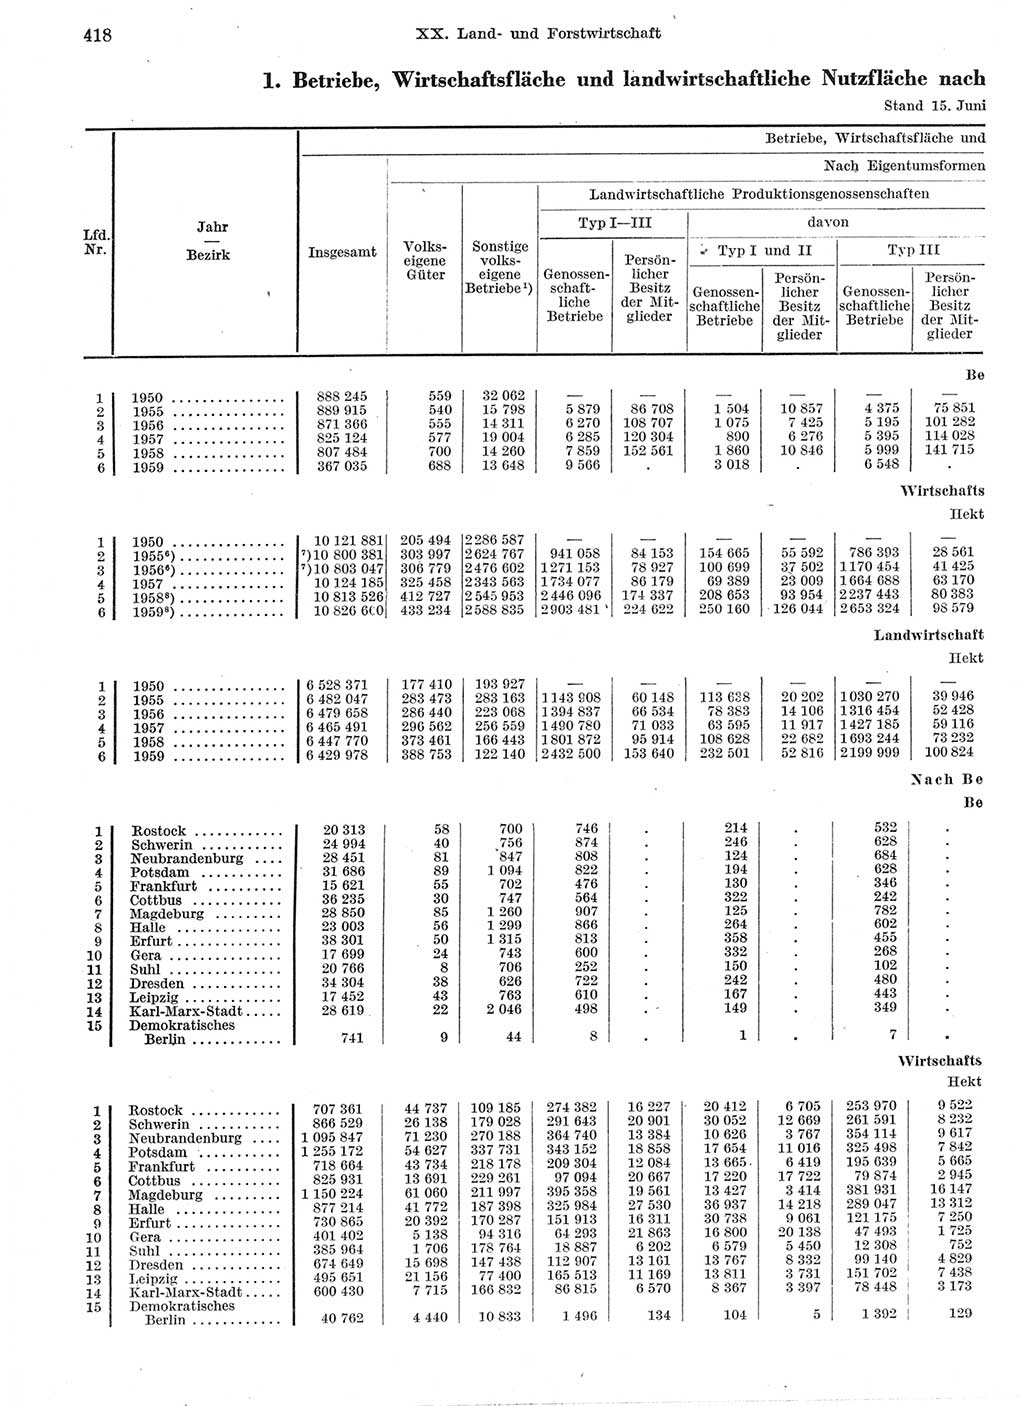 Statistisches Jahrbuch der Deutschen Demokratischen Republik (DDR) 1959, Seite 418 (Stat. Jb. DDR 1959, S. 418)